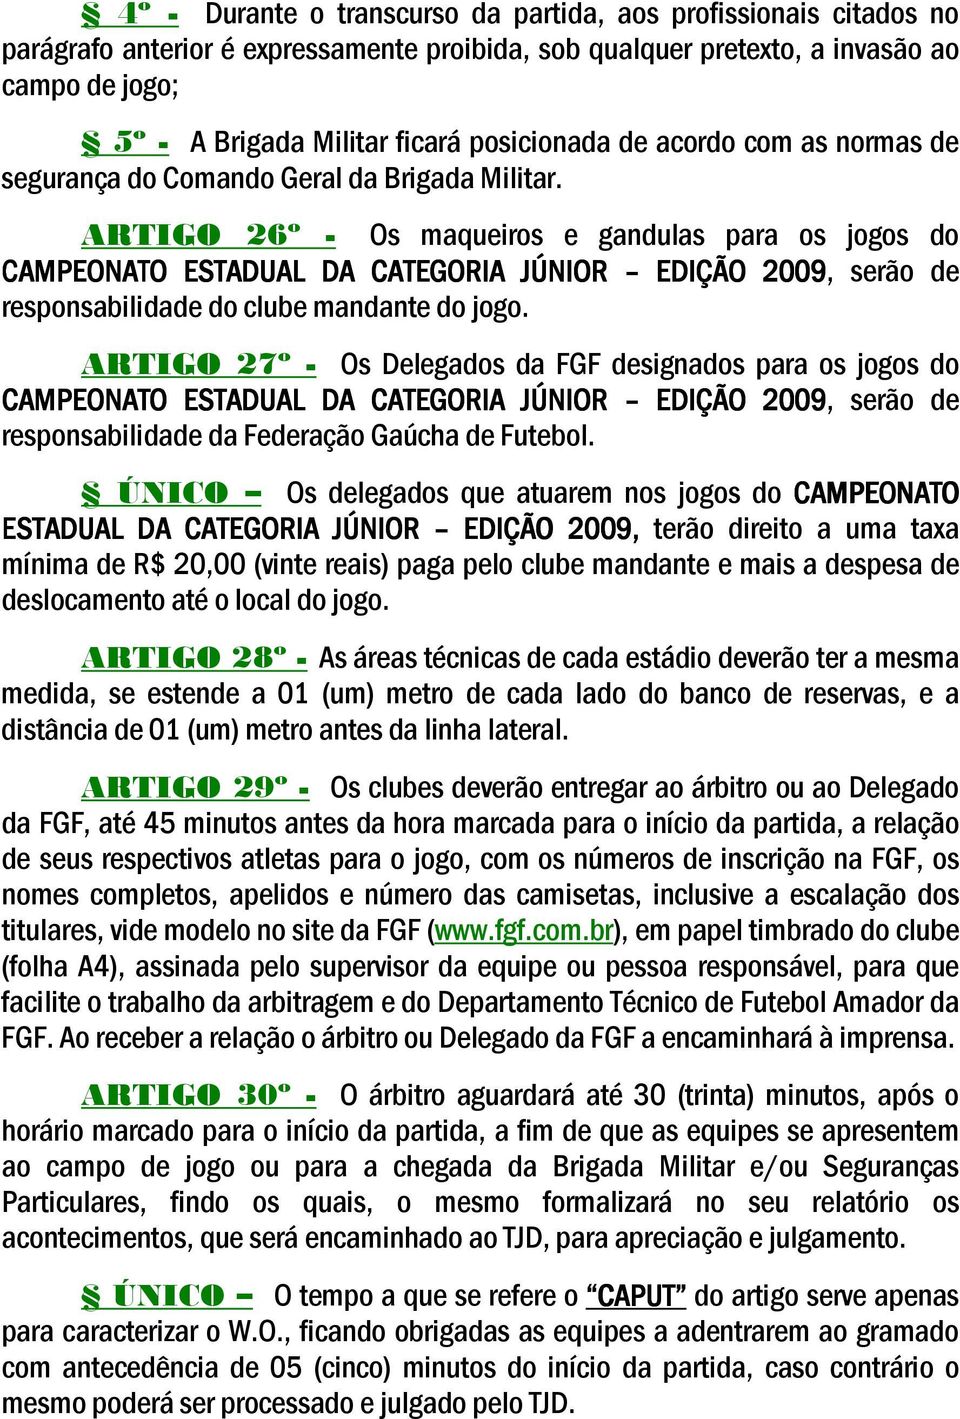 ARTIGO 26º - Os maqueiros e gandulas para os jogos do CAMPEONATO ESTADUAL DA CATEGORIA JÚNIOR EDIÇÃO 2009, serão de responsabilidade do clube mandante do jogo.